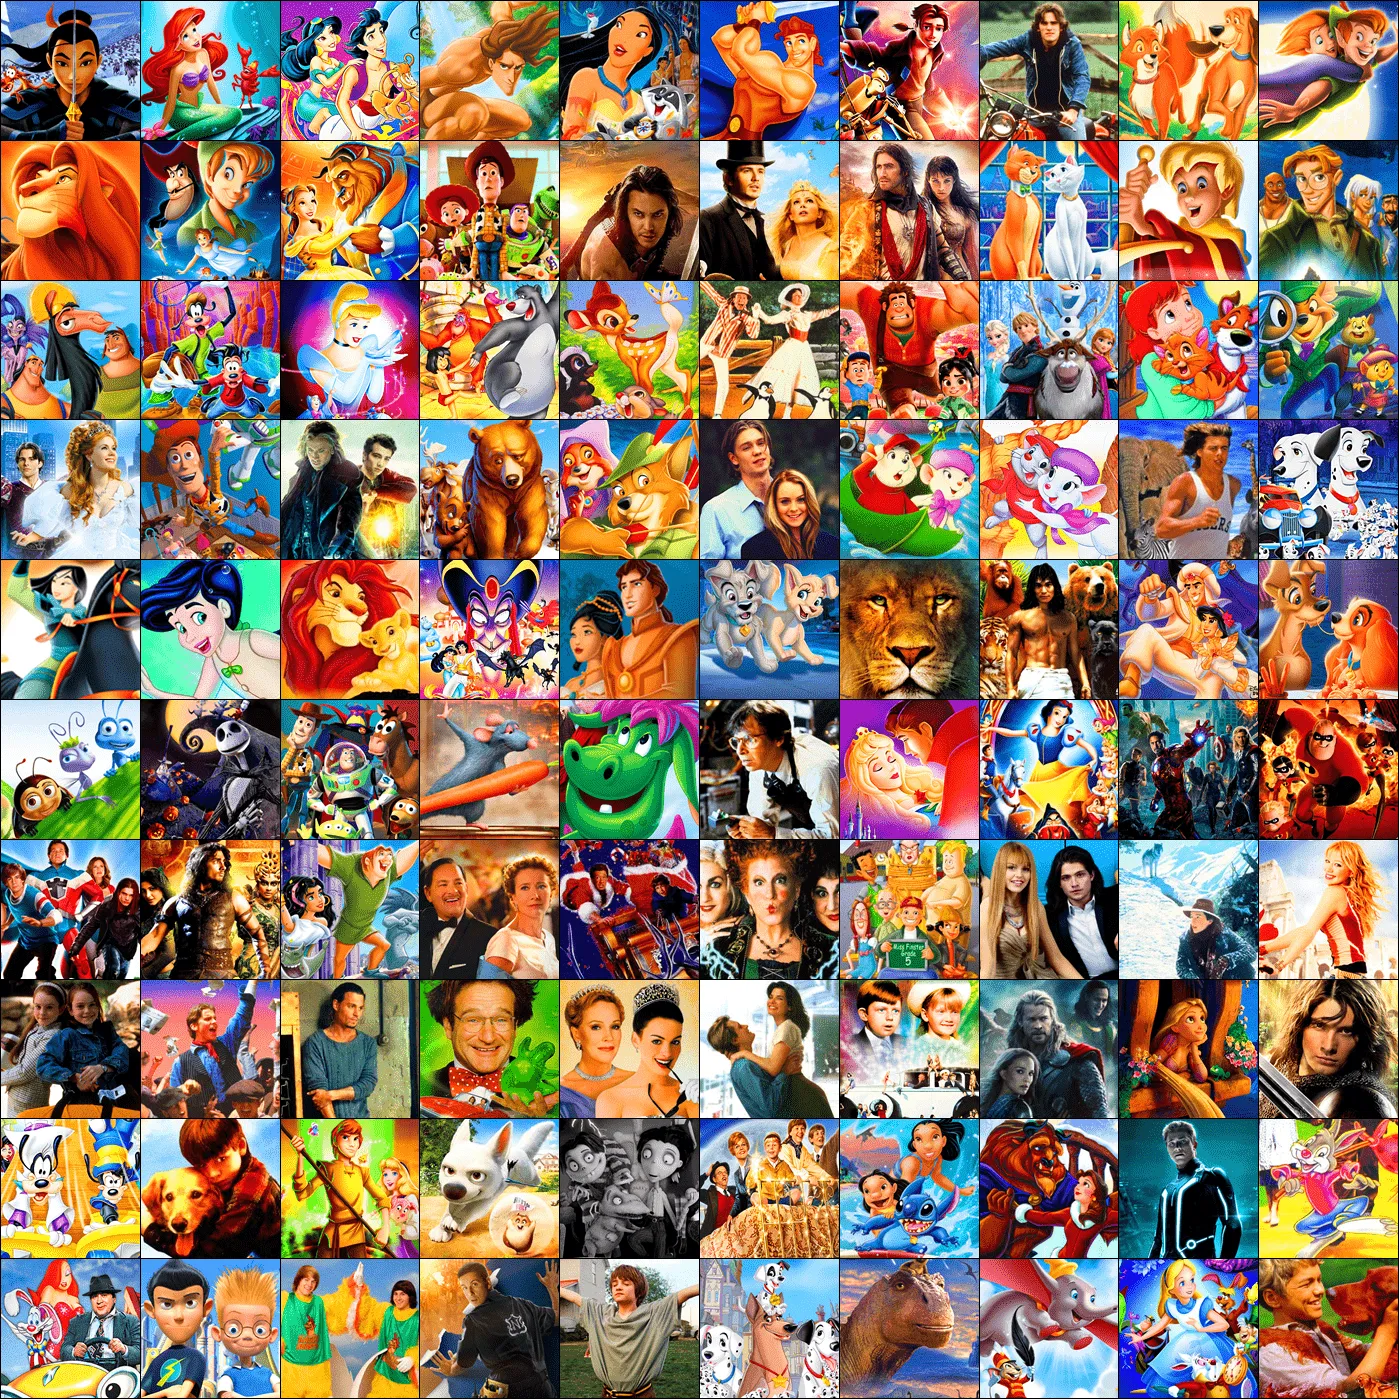 Novedades Disney: Mi top 100 de películas Disney